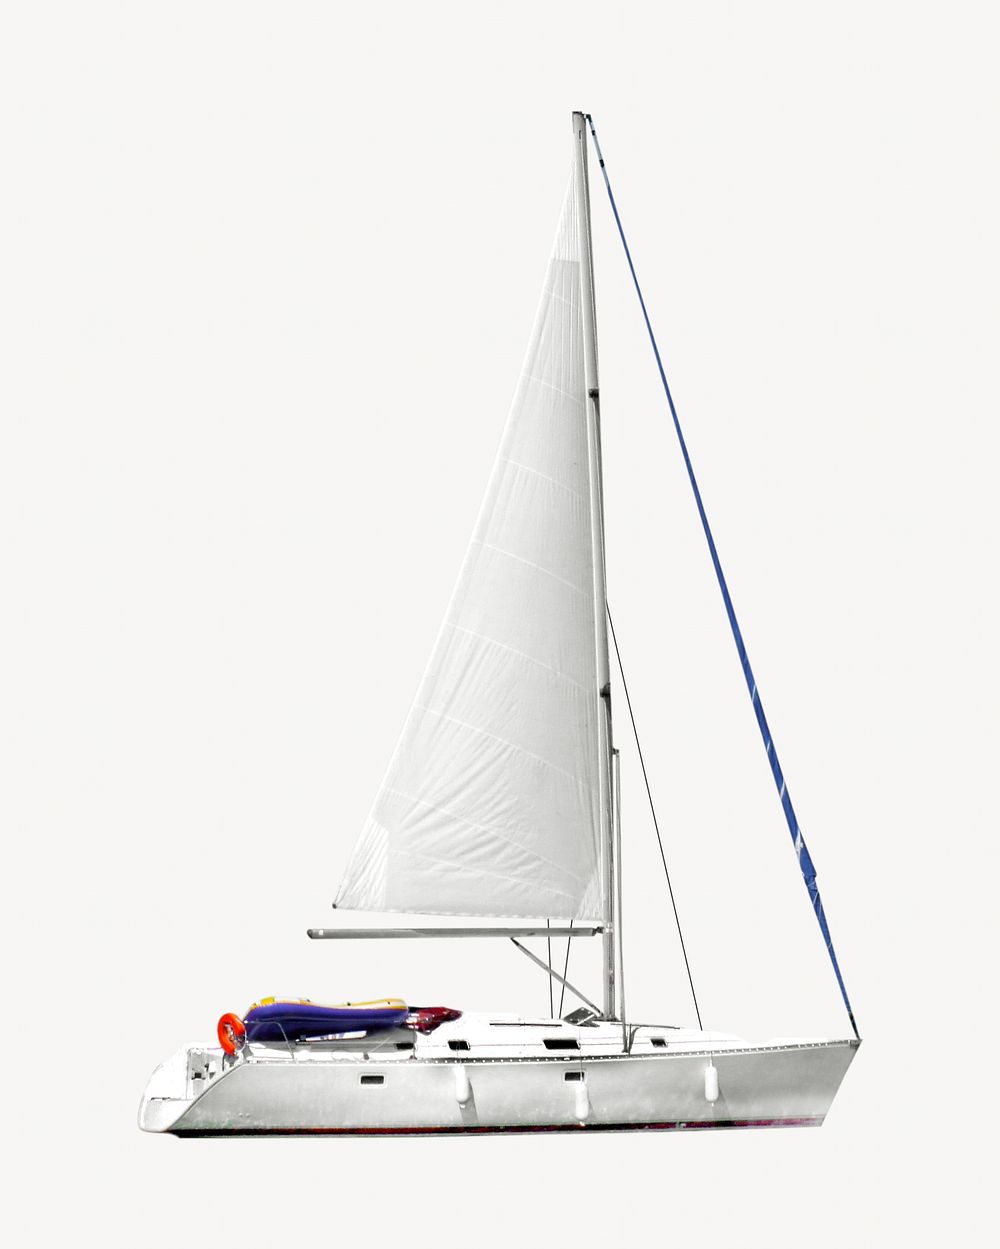 Sailing yacht isolated image on white